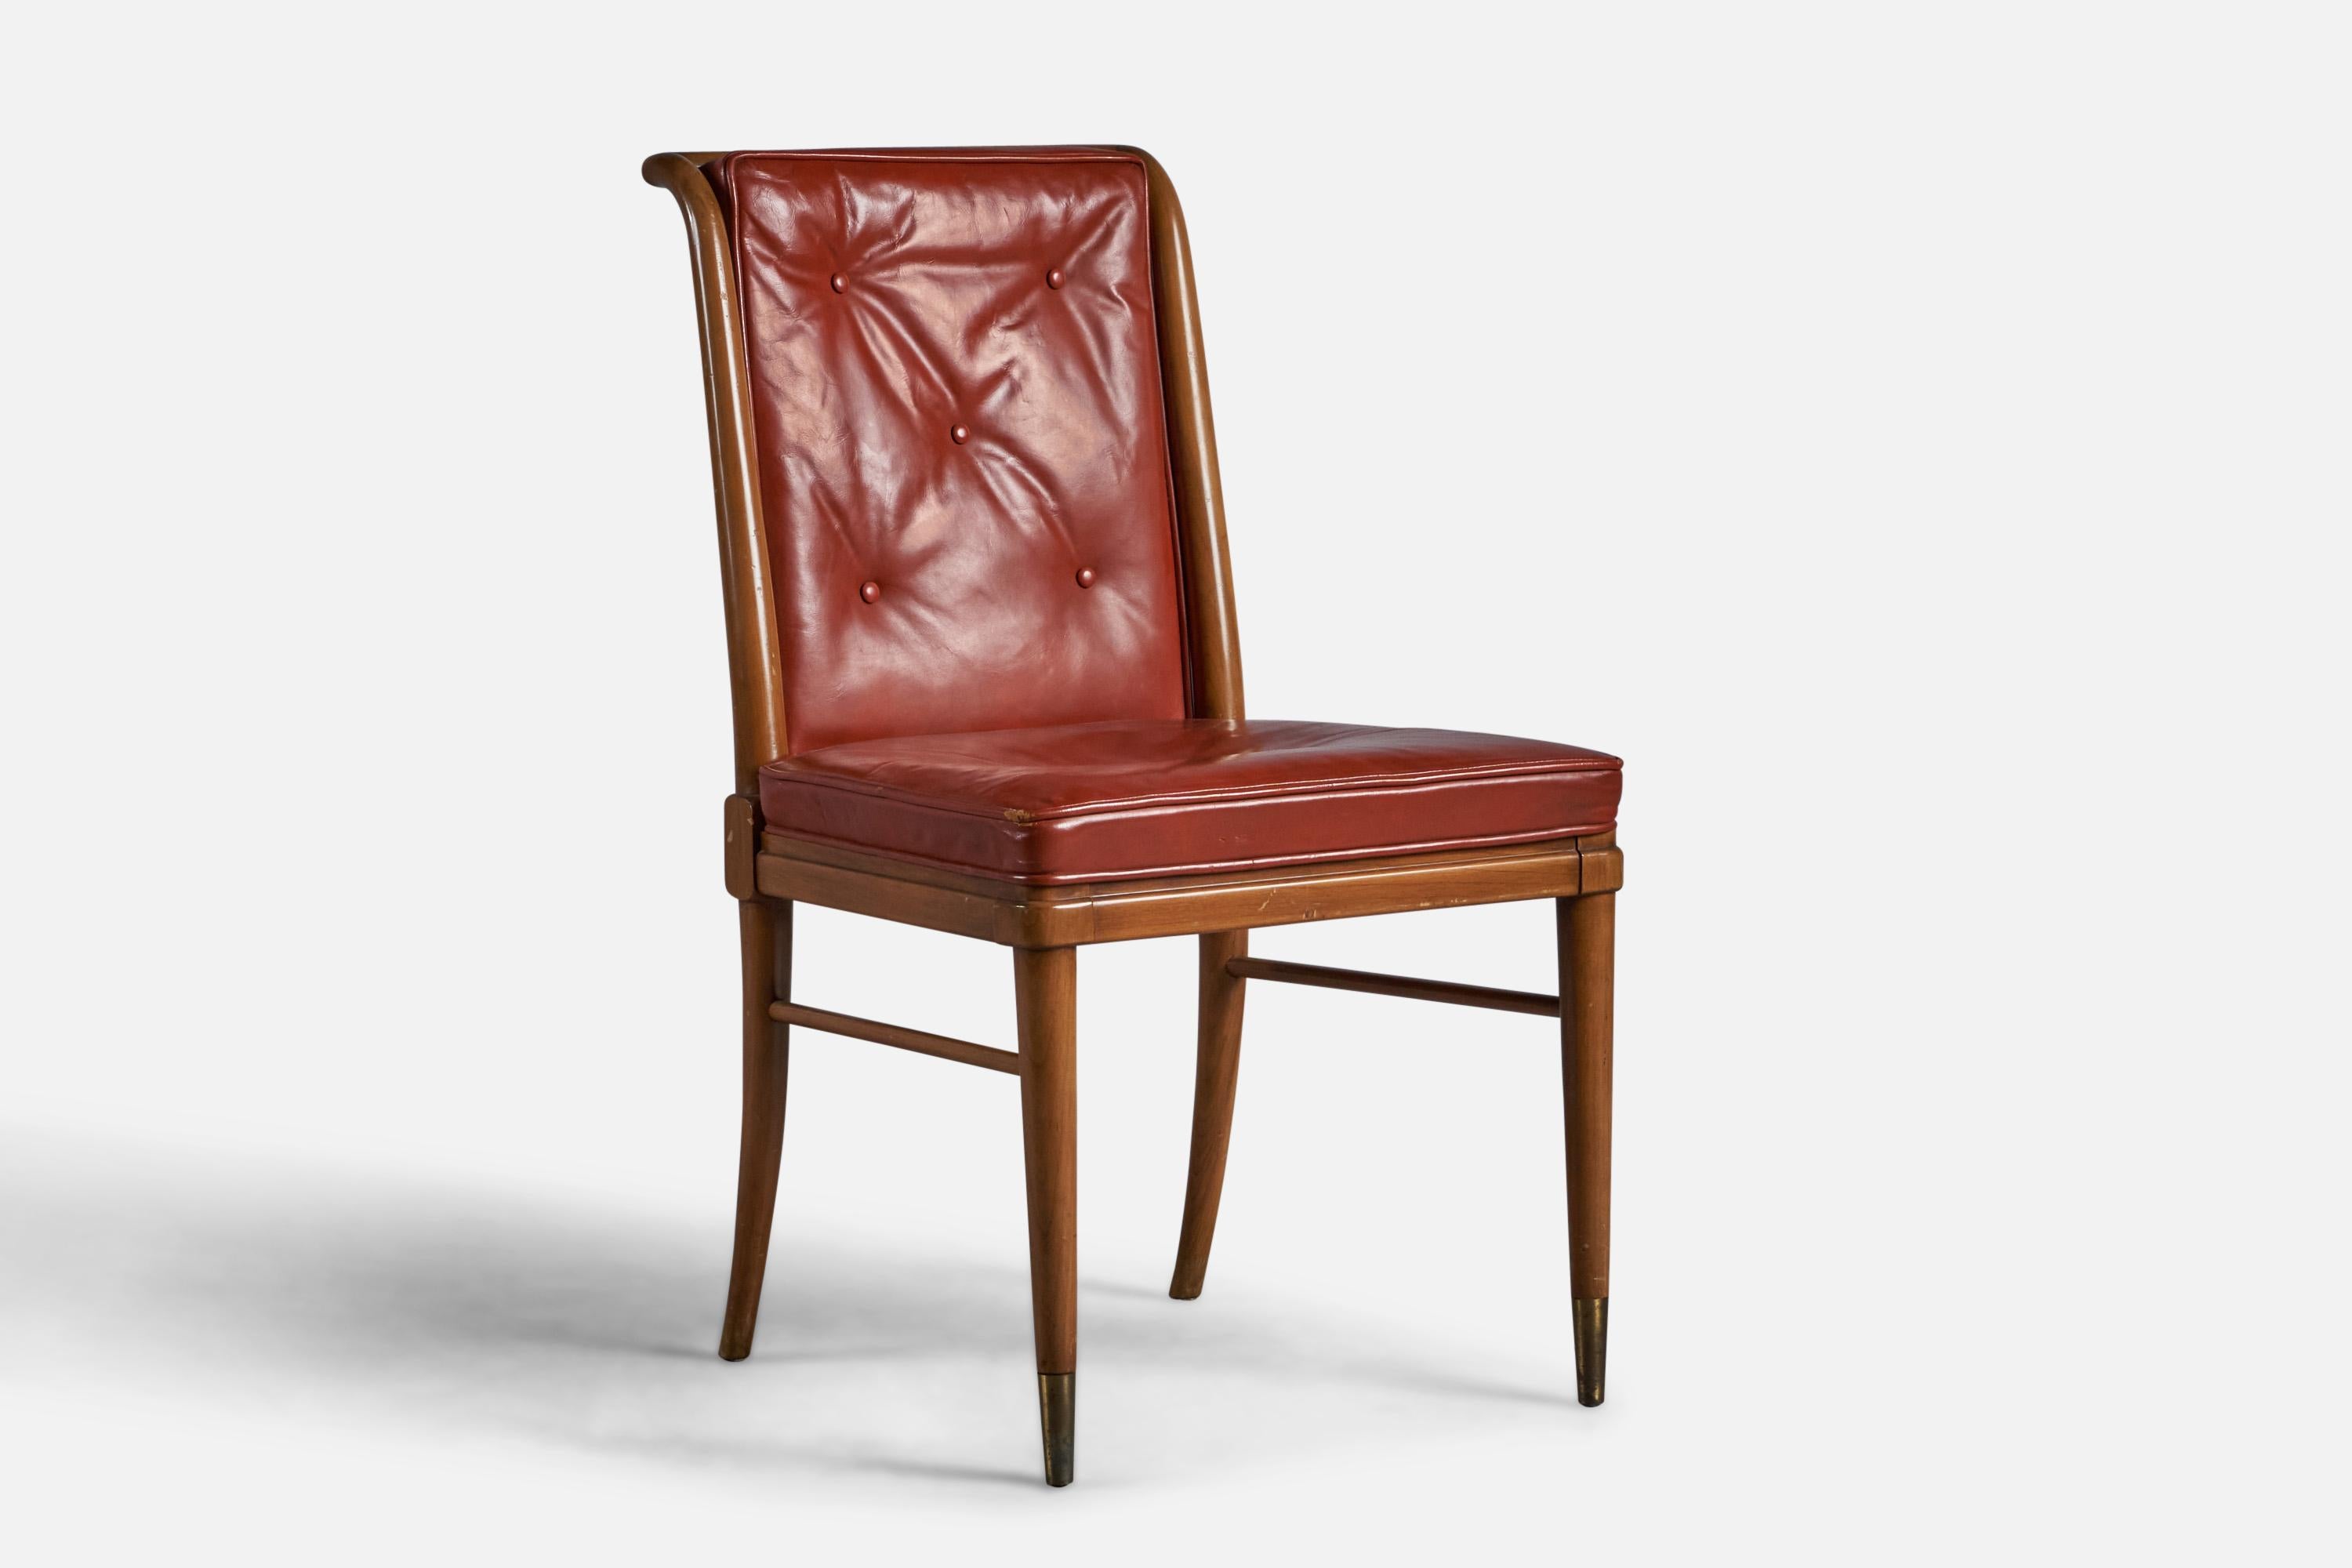 Beistellstuhl aus Nussbaum und Leder, entworfen und hergestellt von John Widdicomb, USA, ca. 1940er Jahre.

18,25